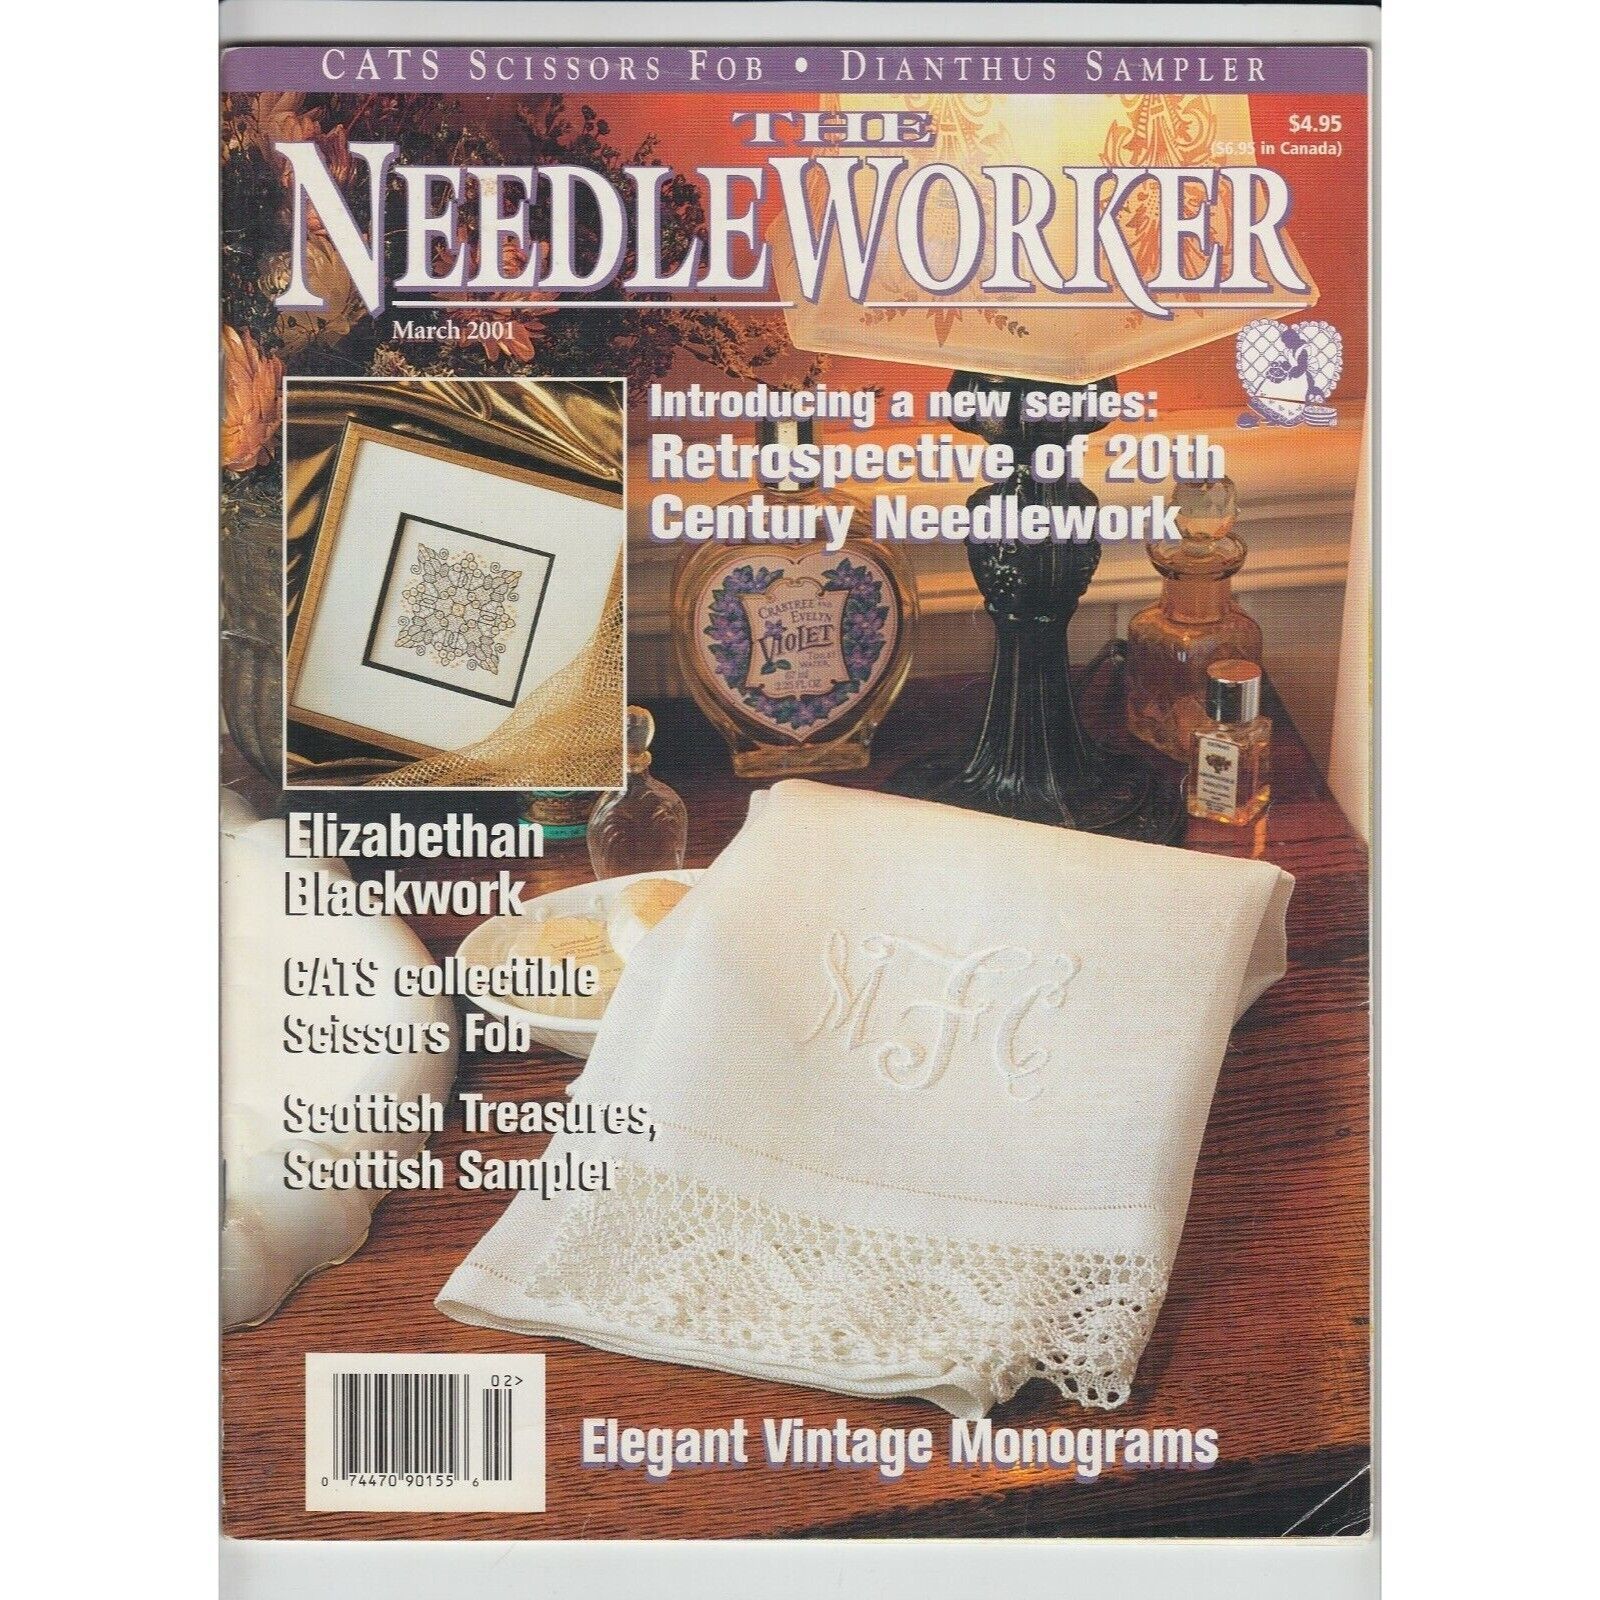 Primary image for The Needleworker Magazine March 2001 Elizabethan Blackwork Scottish Treasures